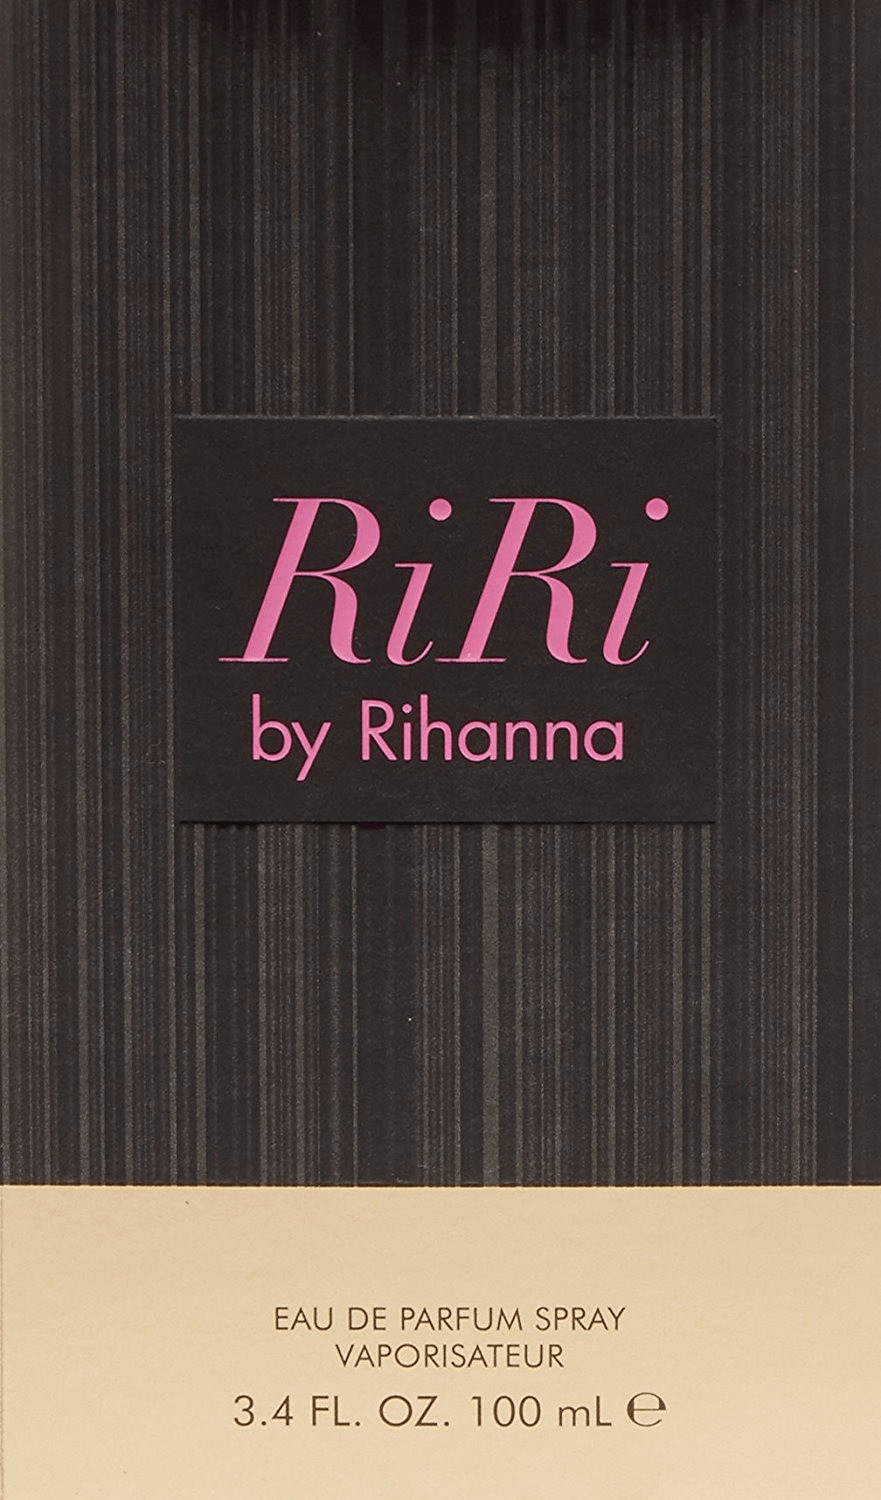 Photos - Women's Fragrance Rihanna Parlux Fragrances Inc. Parlux  Riri Eau de Parfum  (100ml)